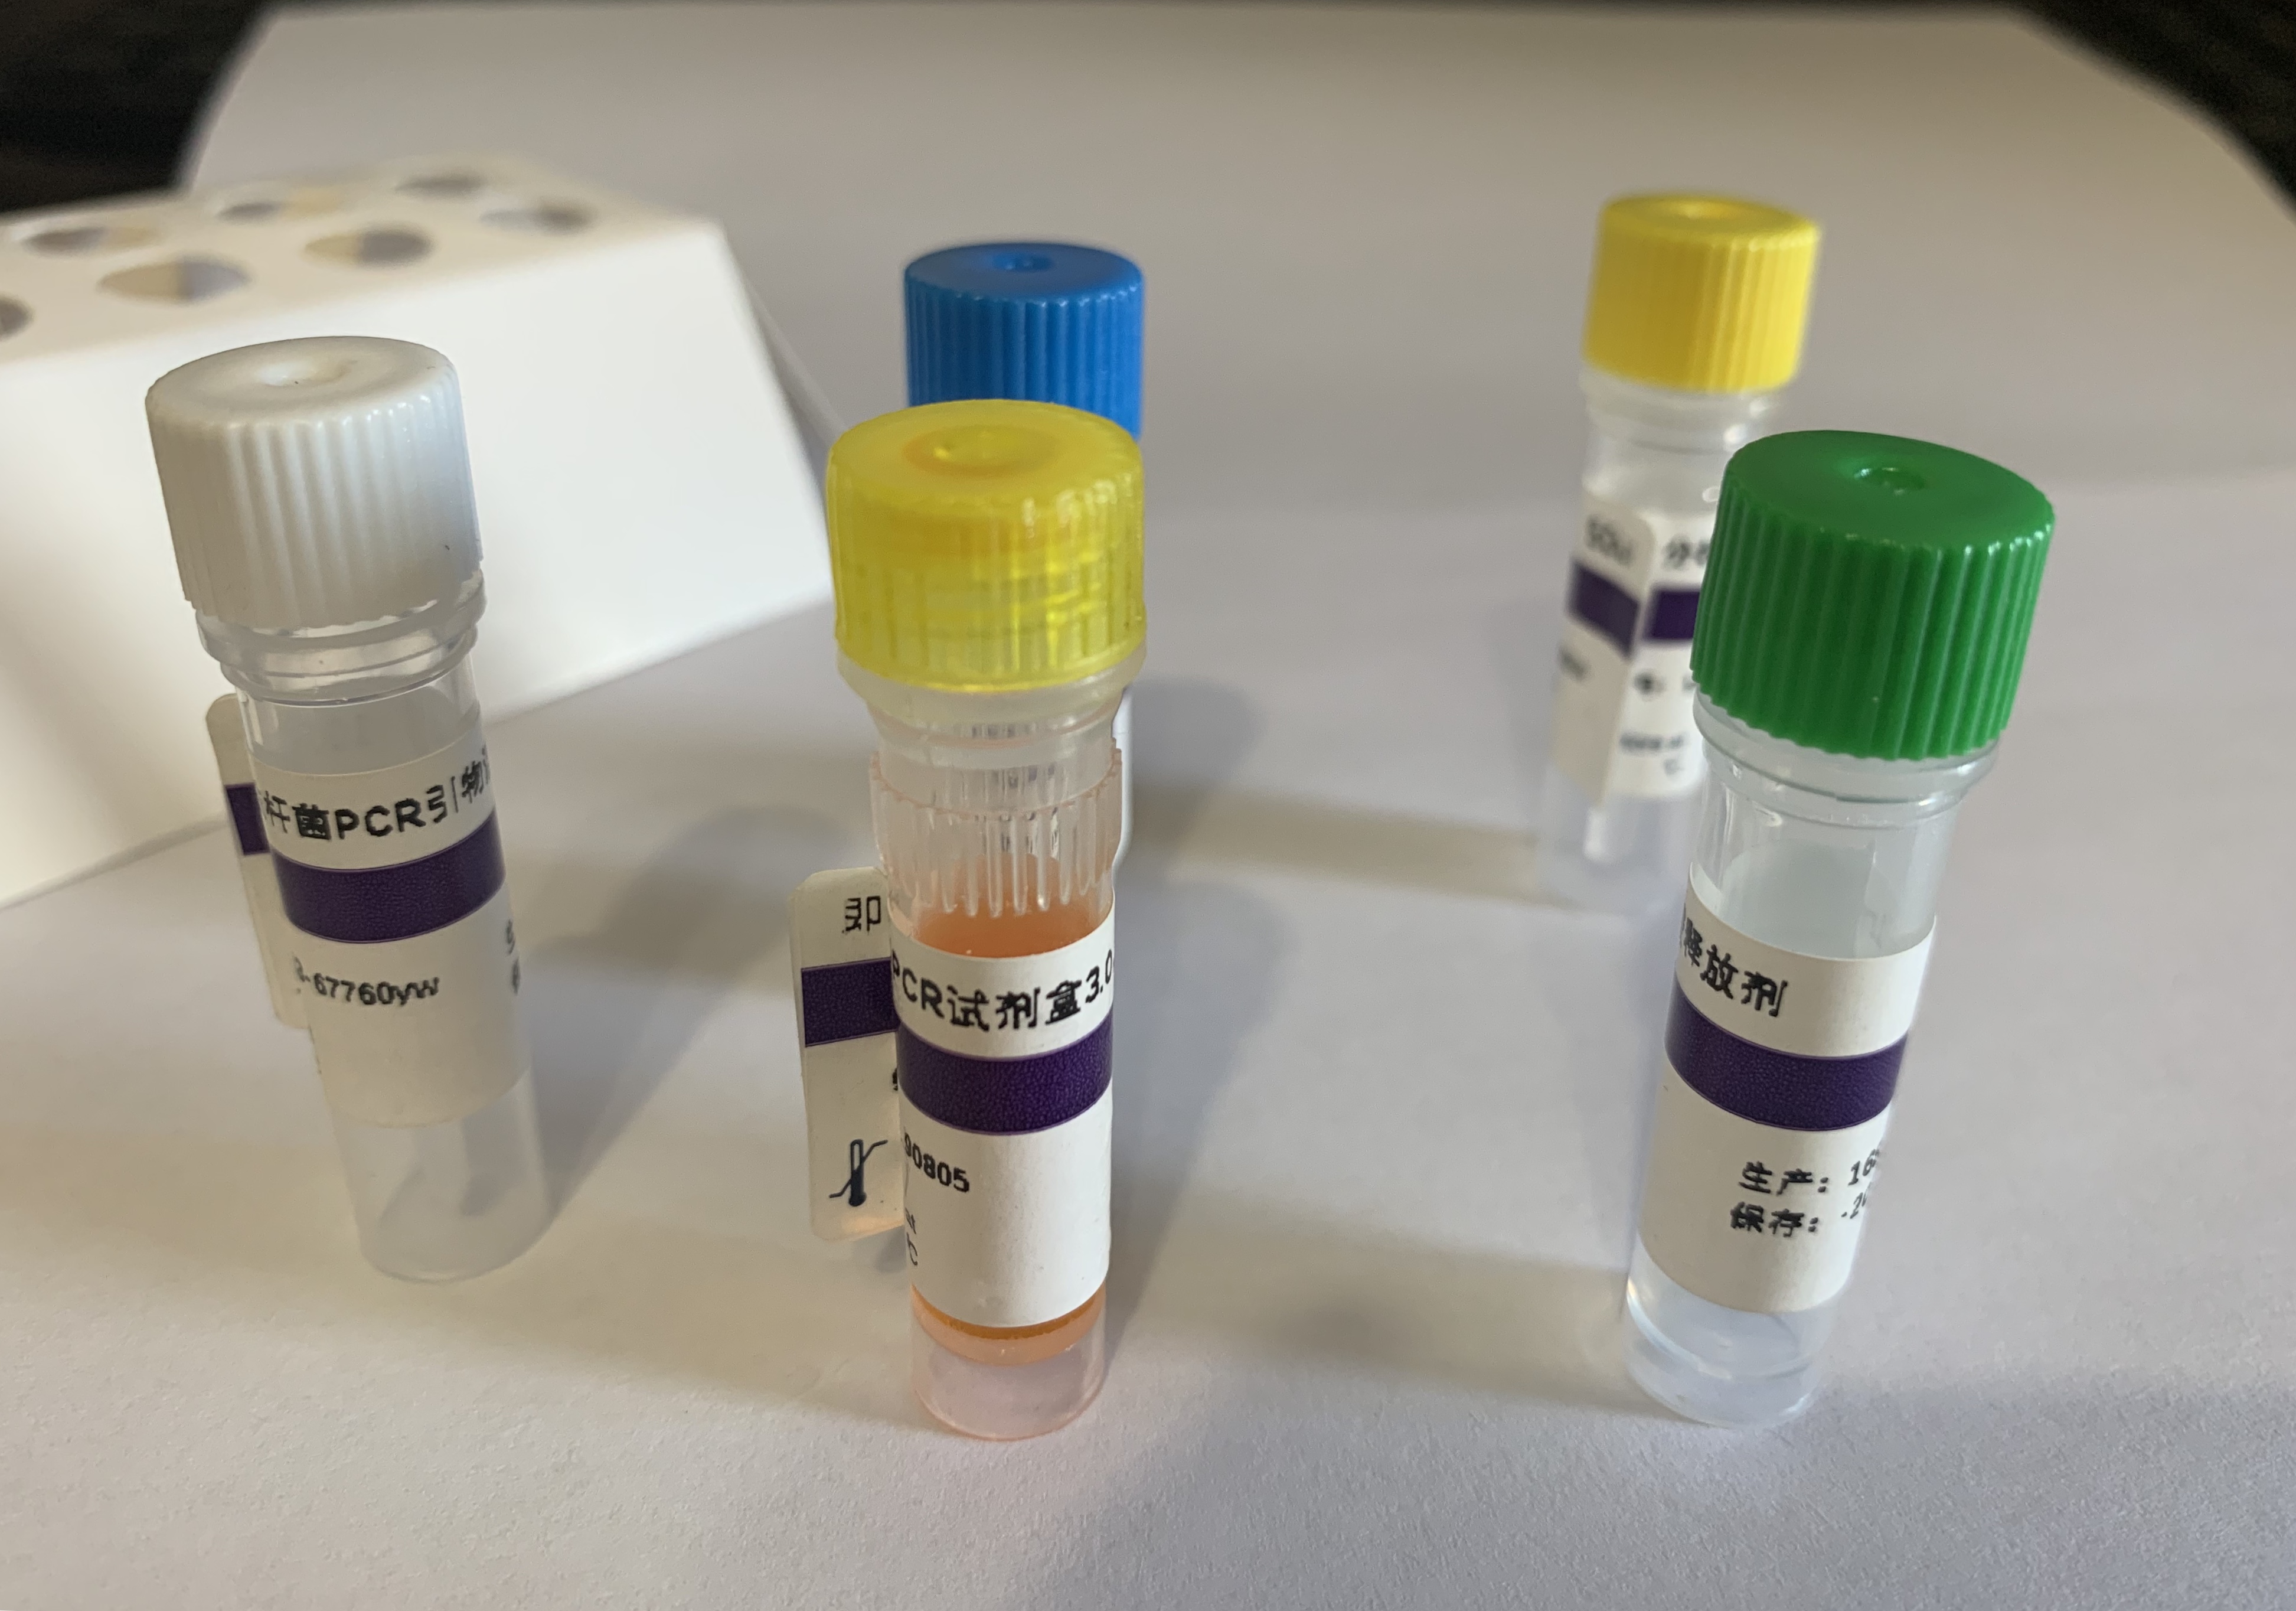 梨火疫病菌PCR试剂盒